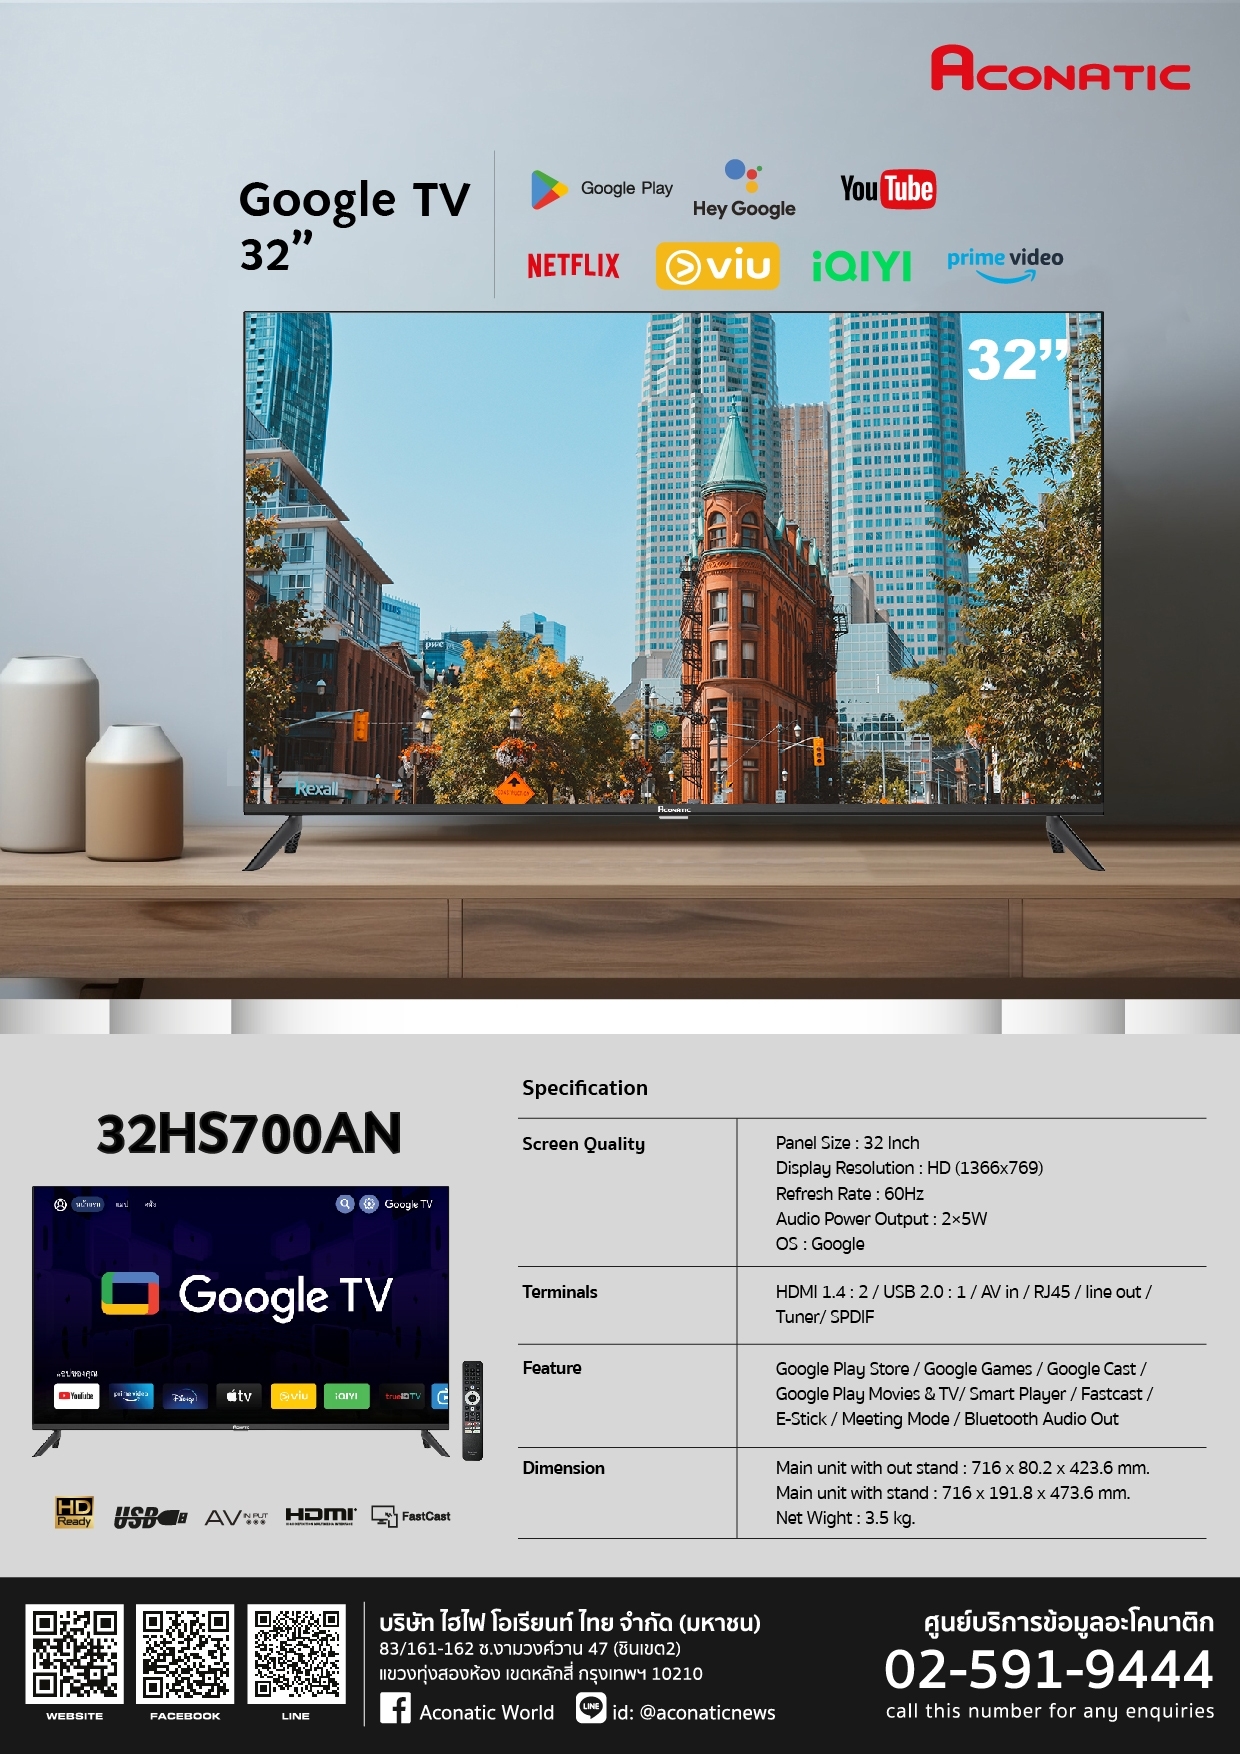 Google TV 32" model 32HS700AN